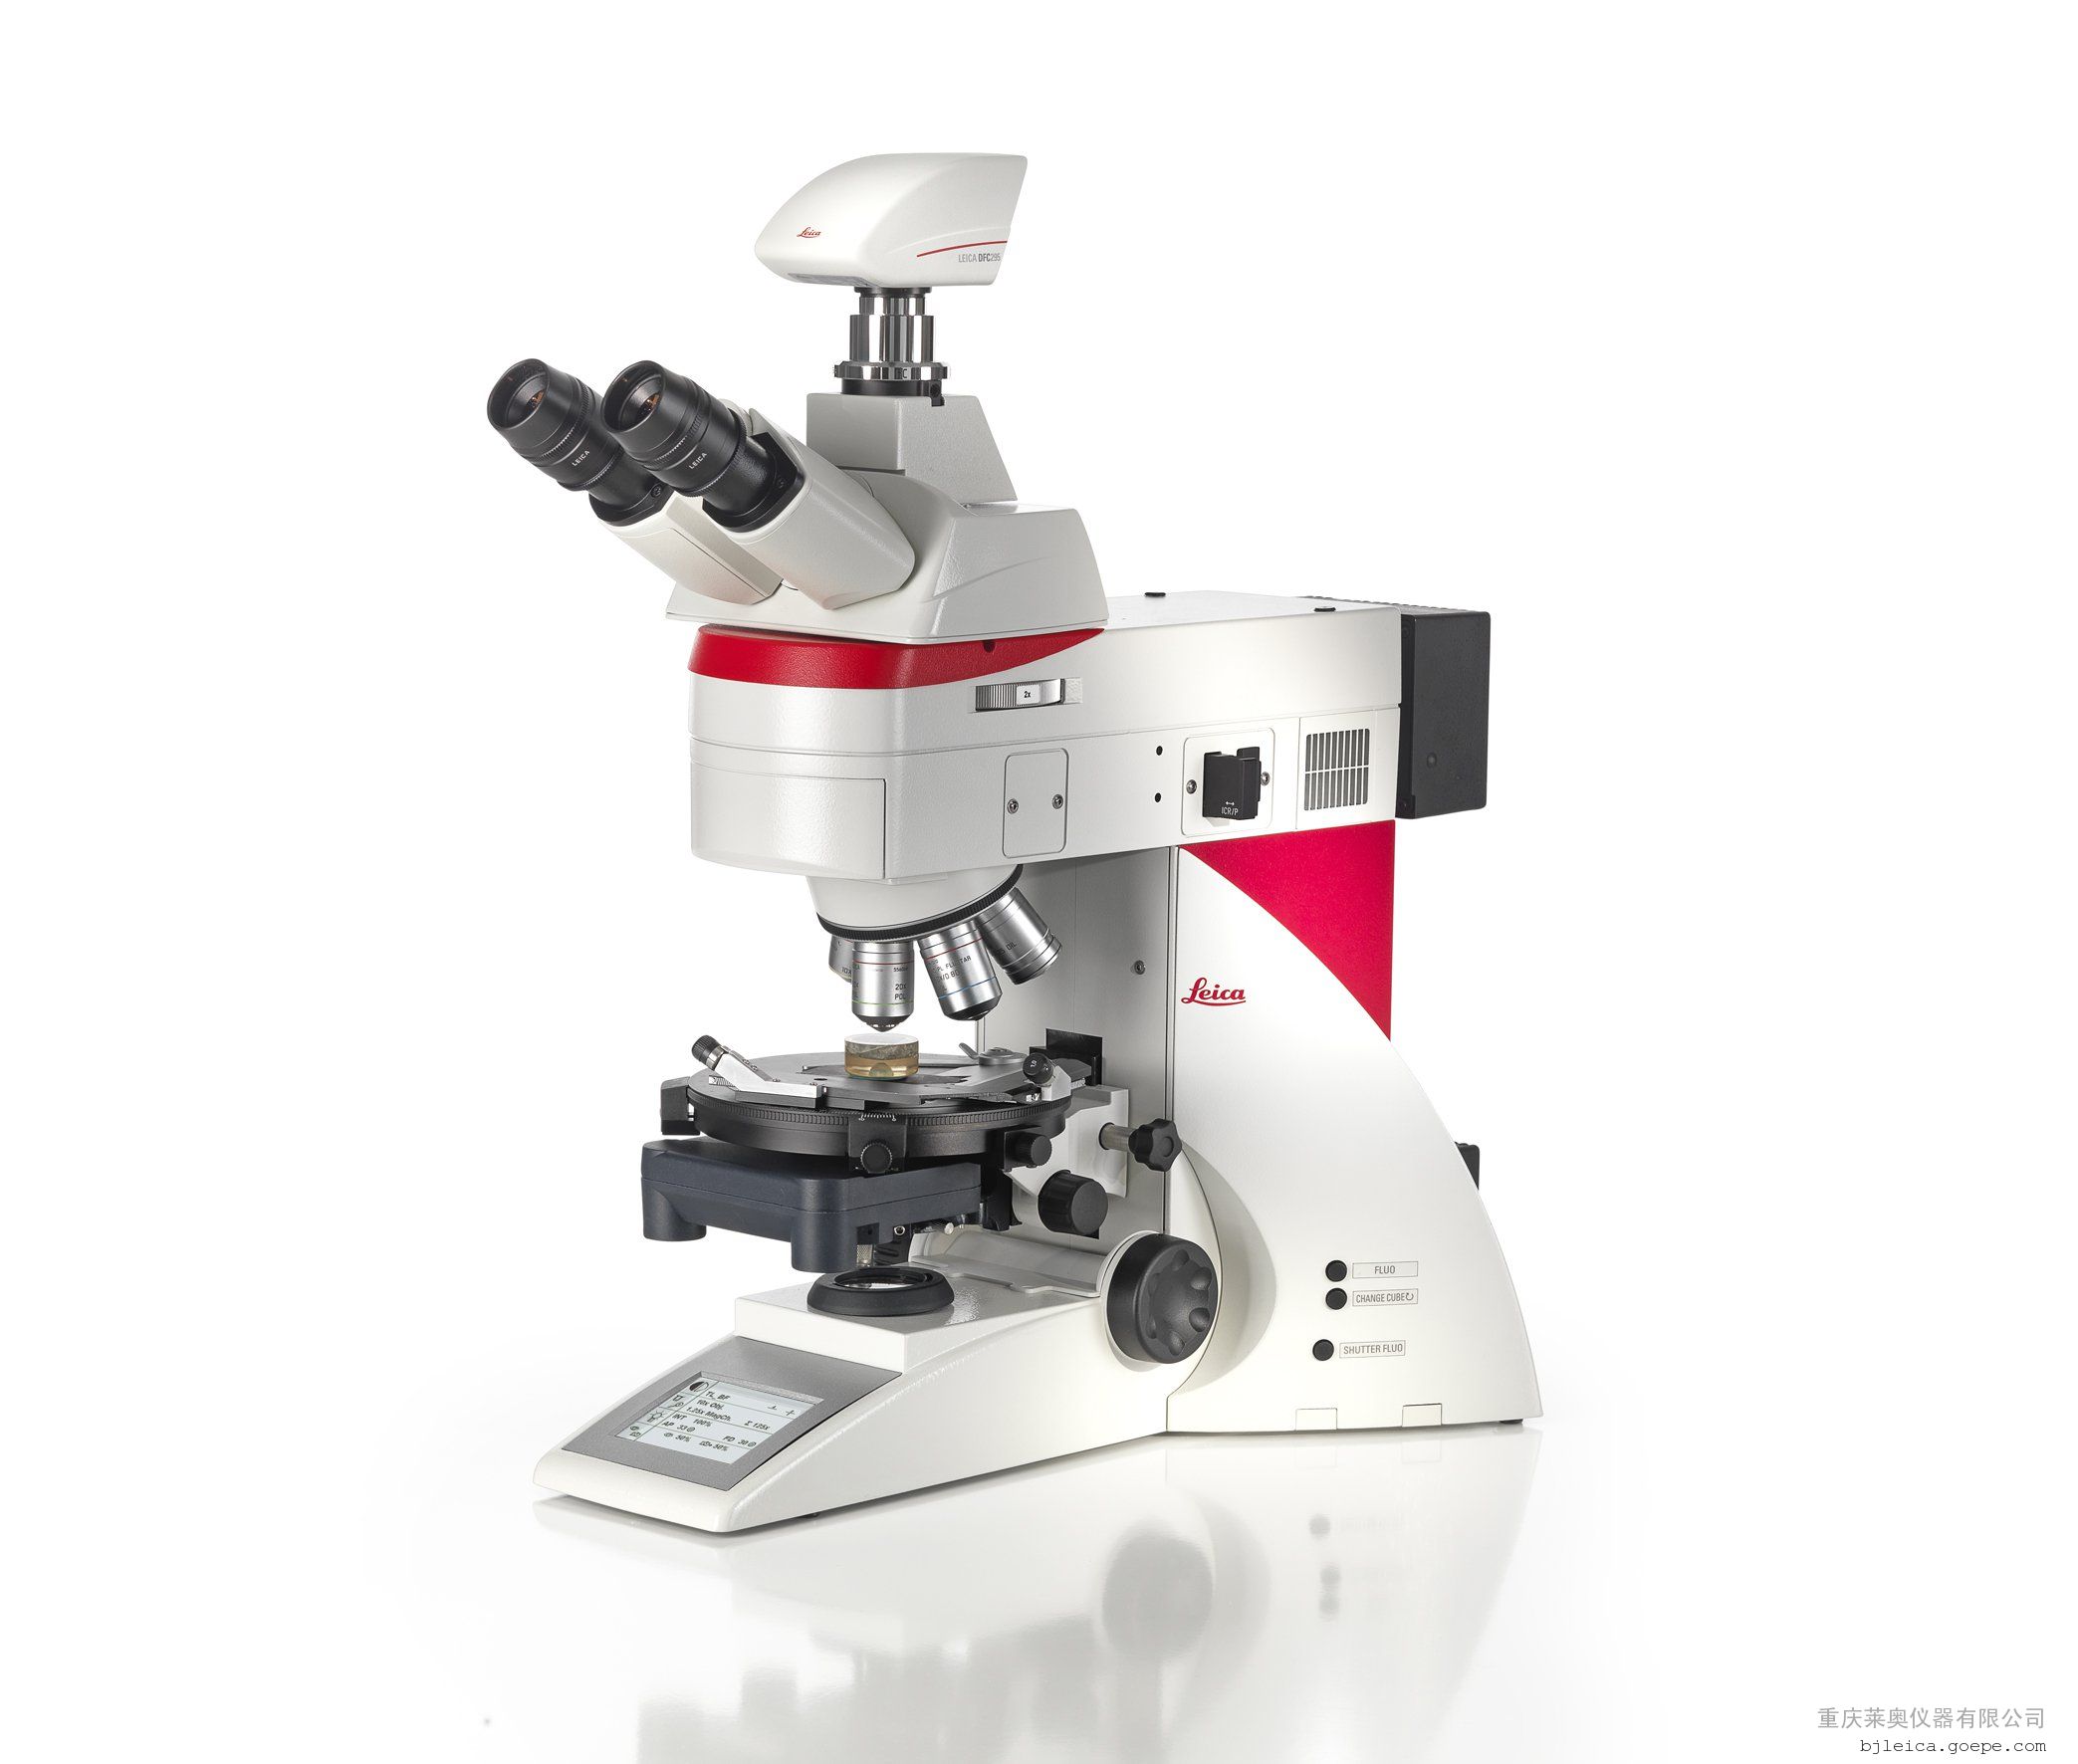 徕卡工业显微镜leica dm4 p最新研究级正置偏光显微镜